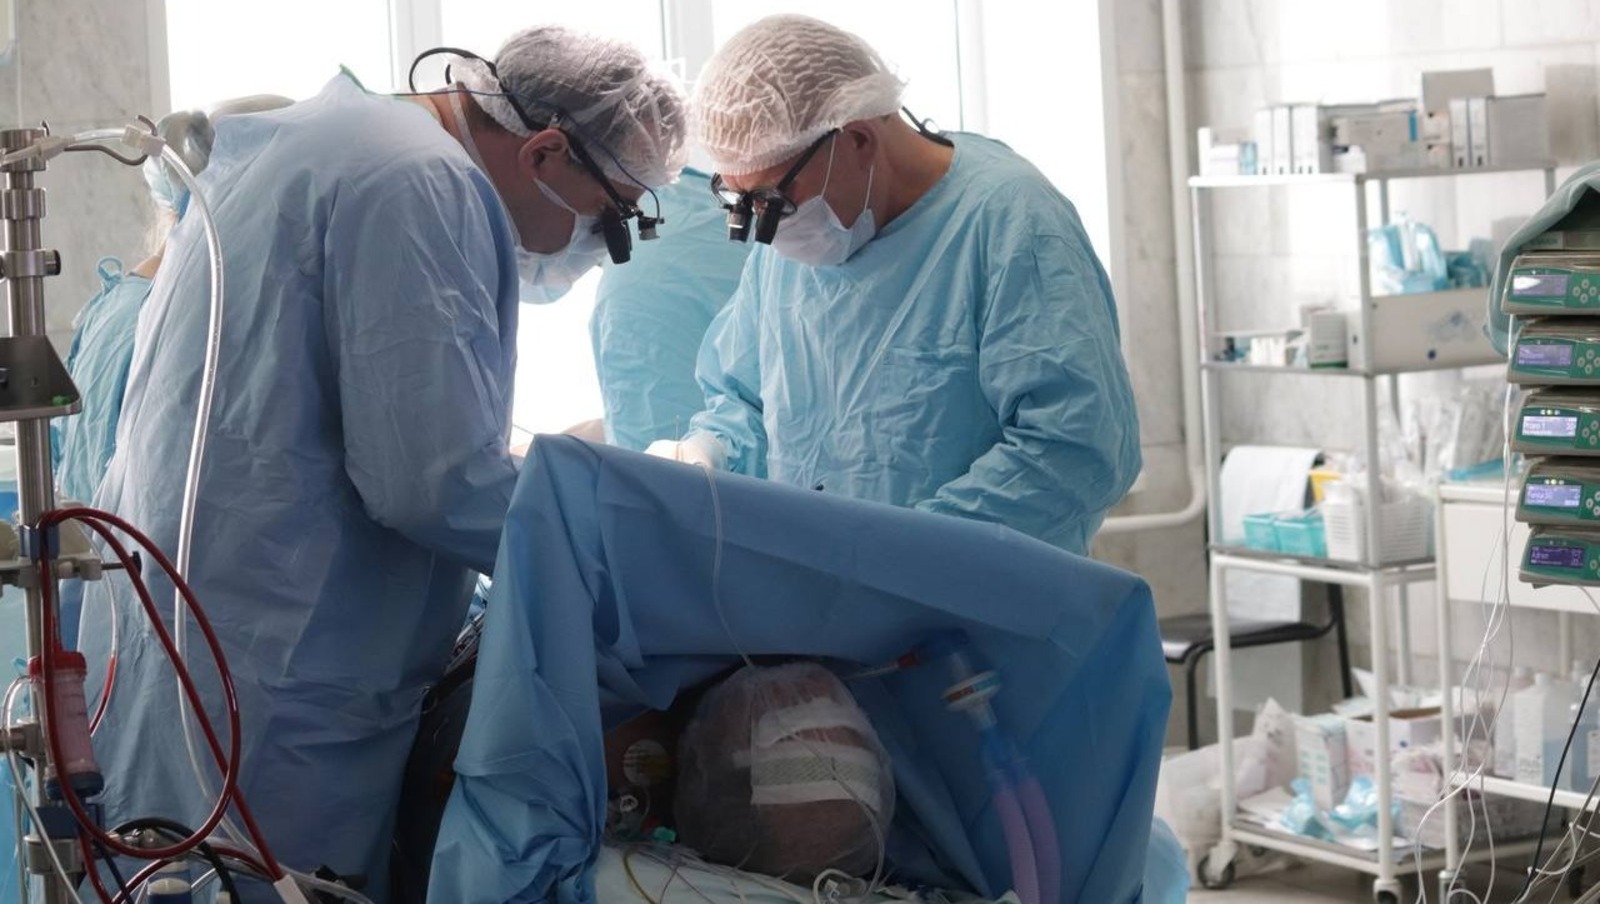 В Башкирии врачи сделали редкую операцию с охлаждением тела пациентки